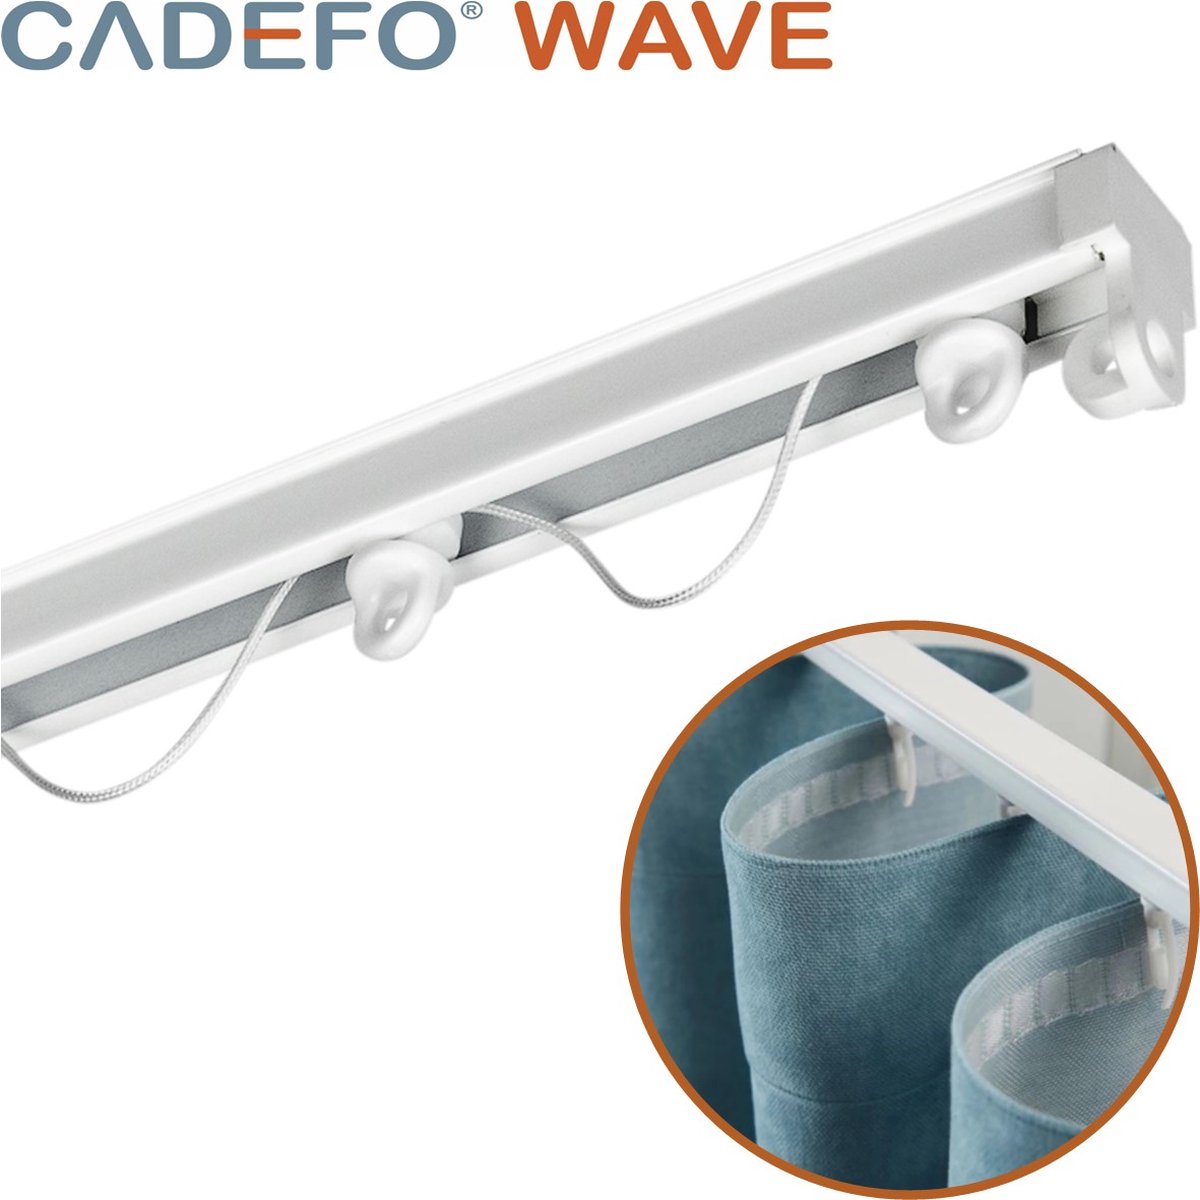 CADEFO WAVE (501 - 550 cm) Gordijnrails - Compleet op maat! - UIT 1 STUK - Leverbaar tot 6 meter - Plafondbevestiging - Lengte 522 cm